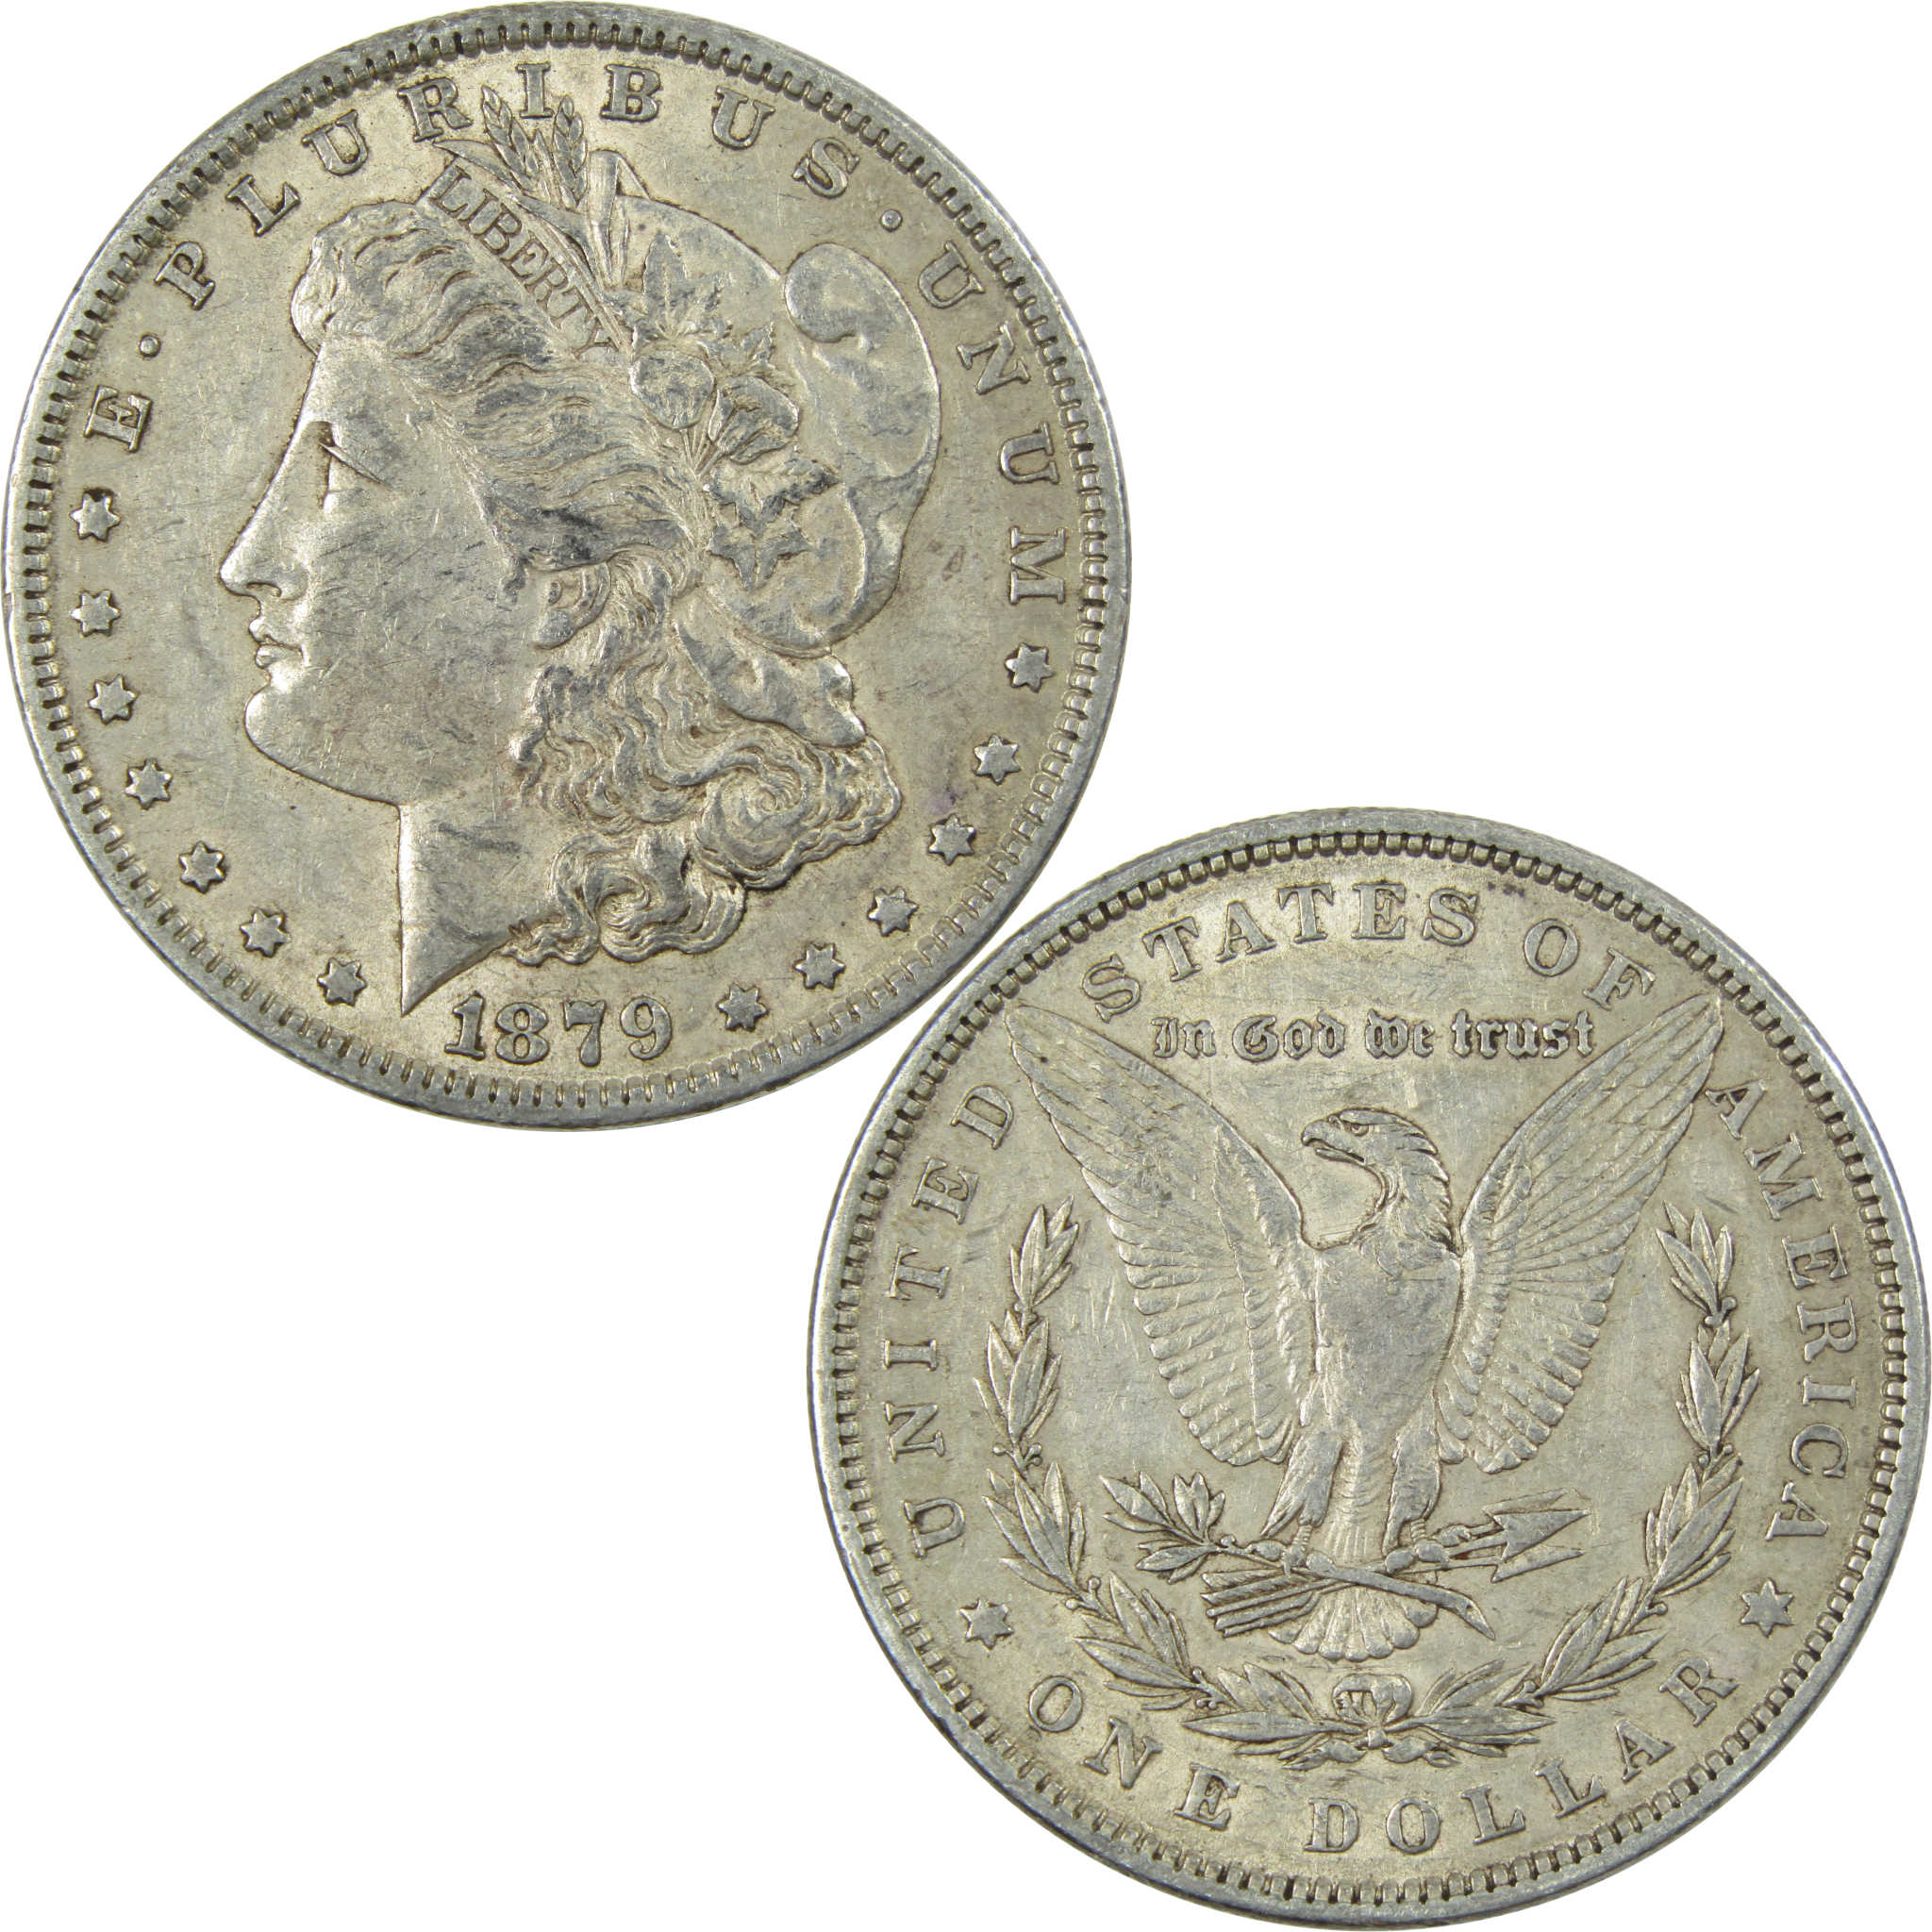 1879 Morgan Dollar XF EF Extremely Fine 90% Silver $1 US Coin Collectible - Morgan coin - Morgan silver dollar - Morgan silver dollar for sale - Profile Coins &amp; Collectibles